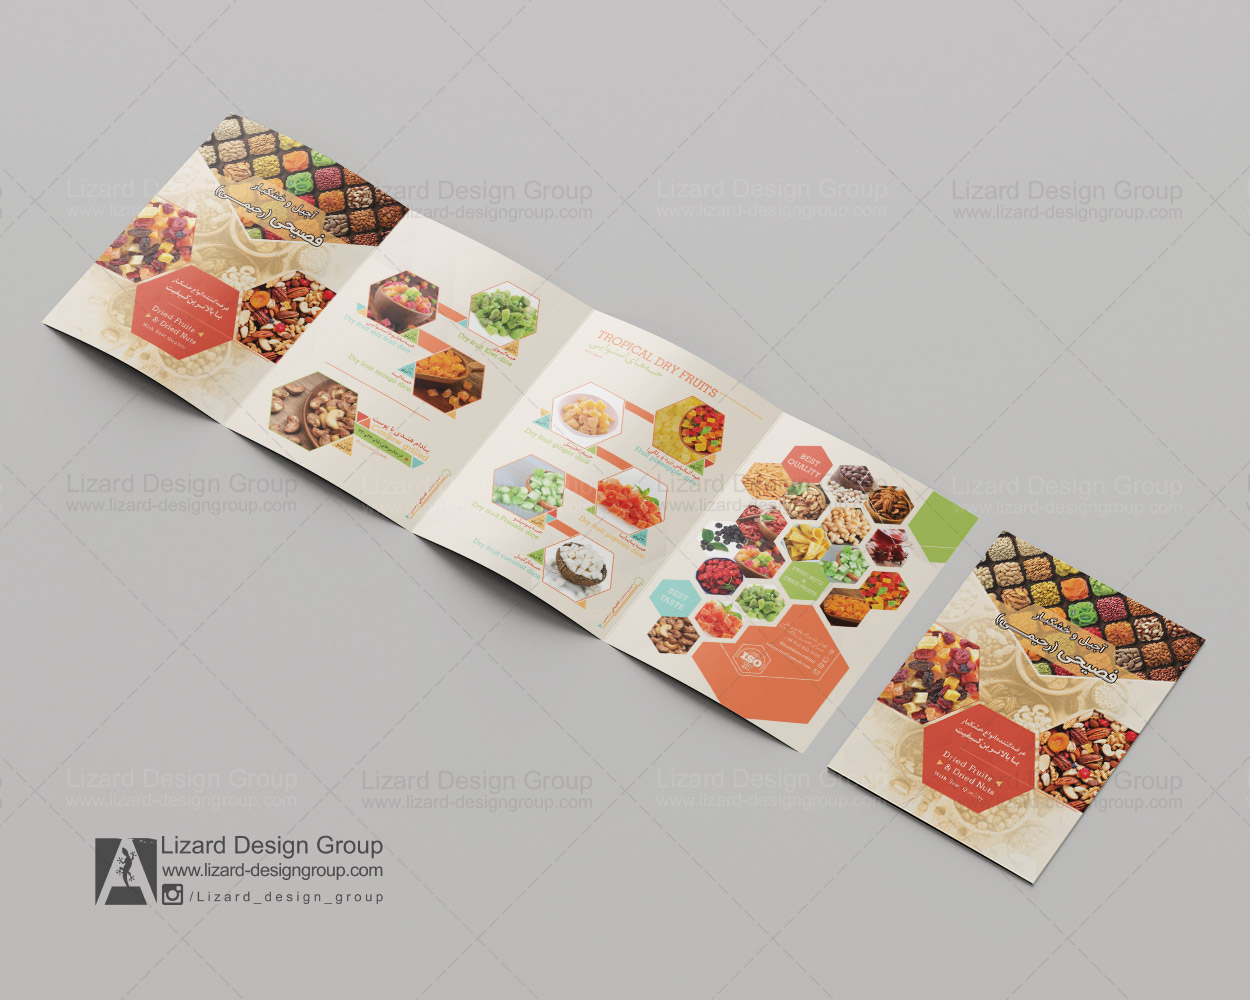 طراحی بروشور مواد غذایی - گروه طراحی لیزارد